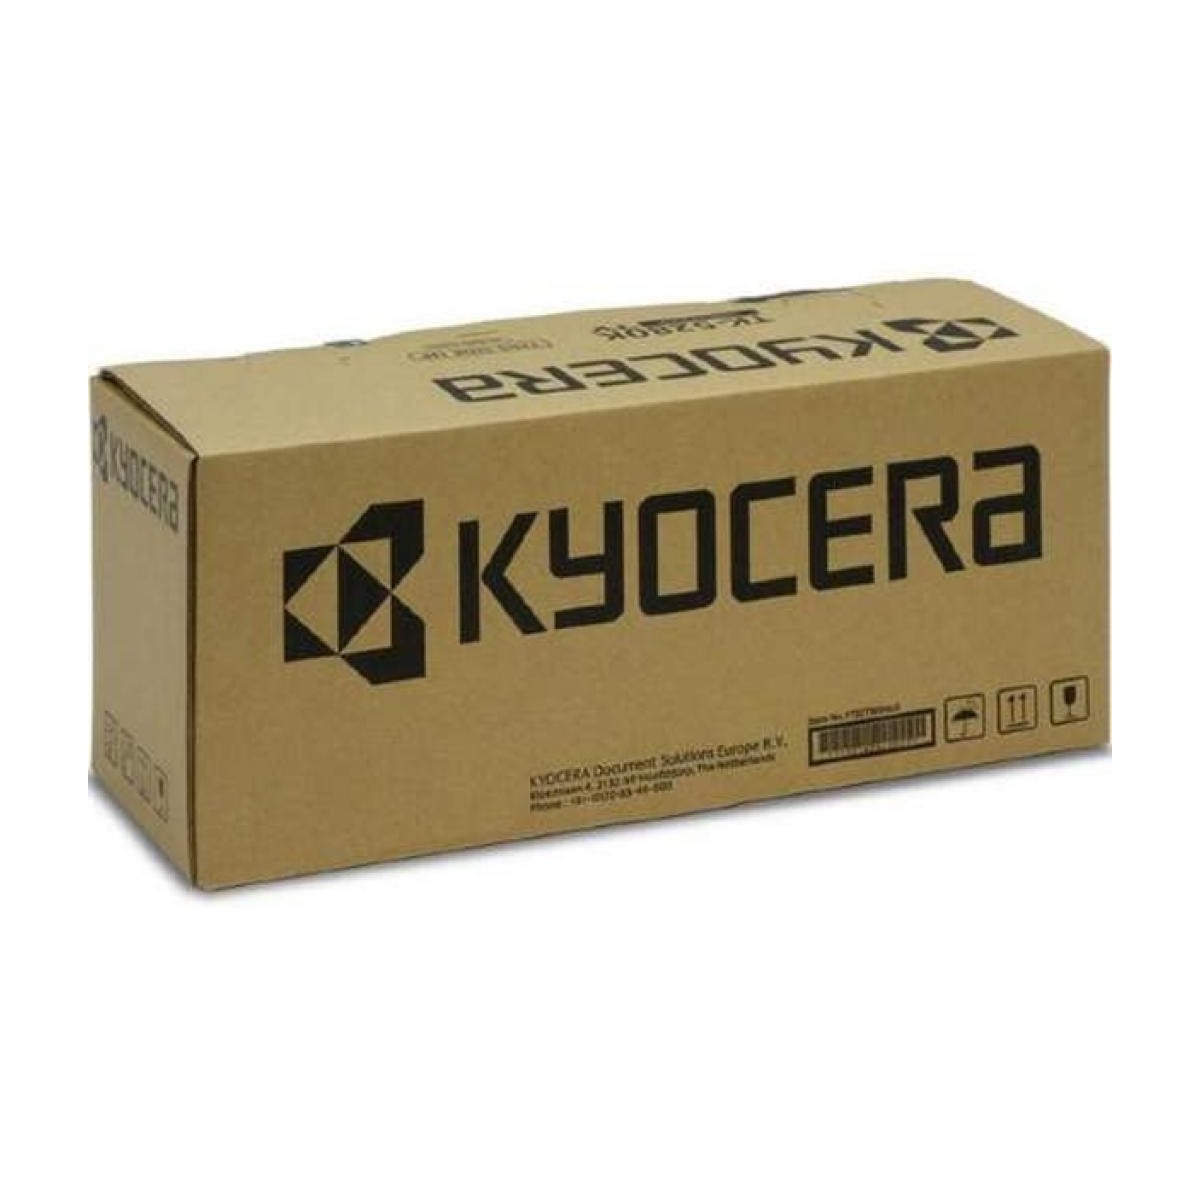 Kyocera Drum DK-8705 302K993059/302K993